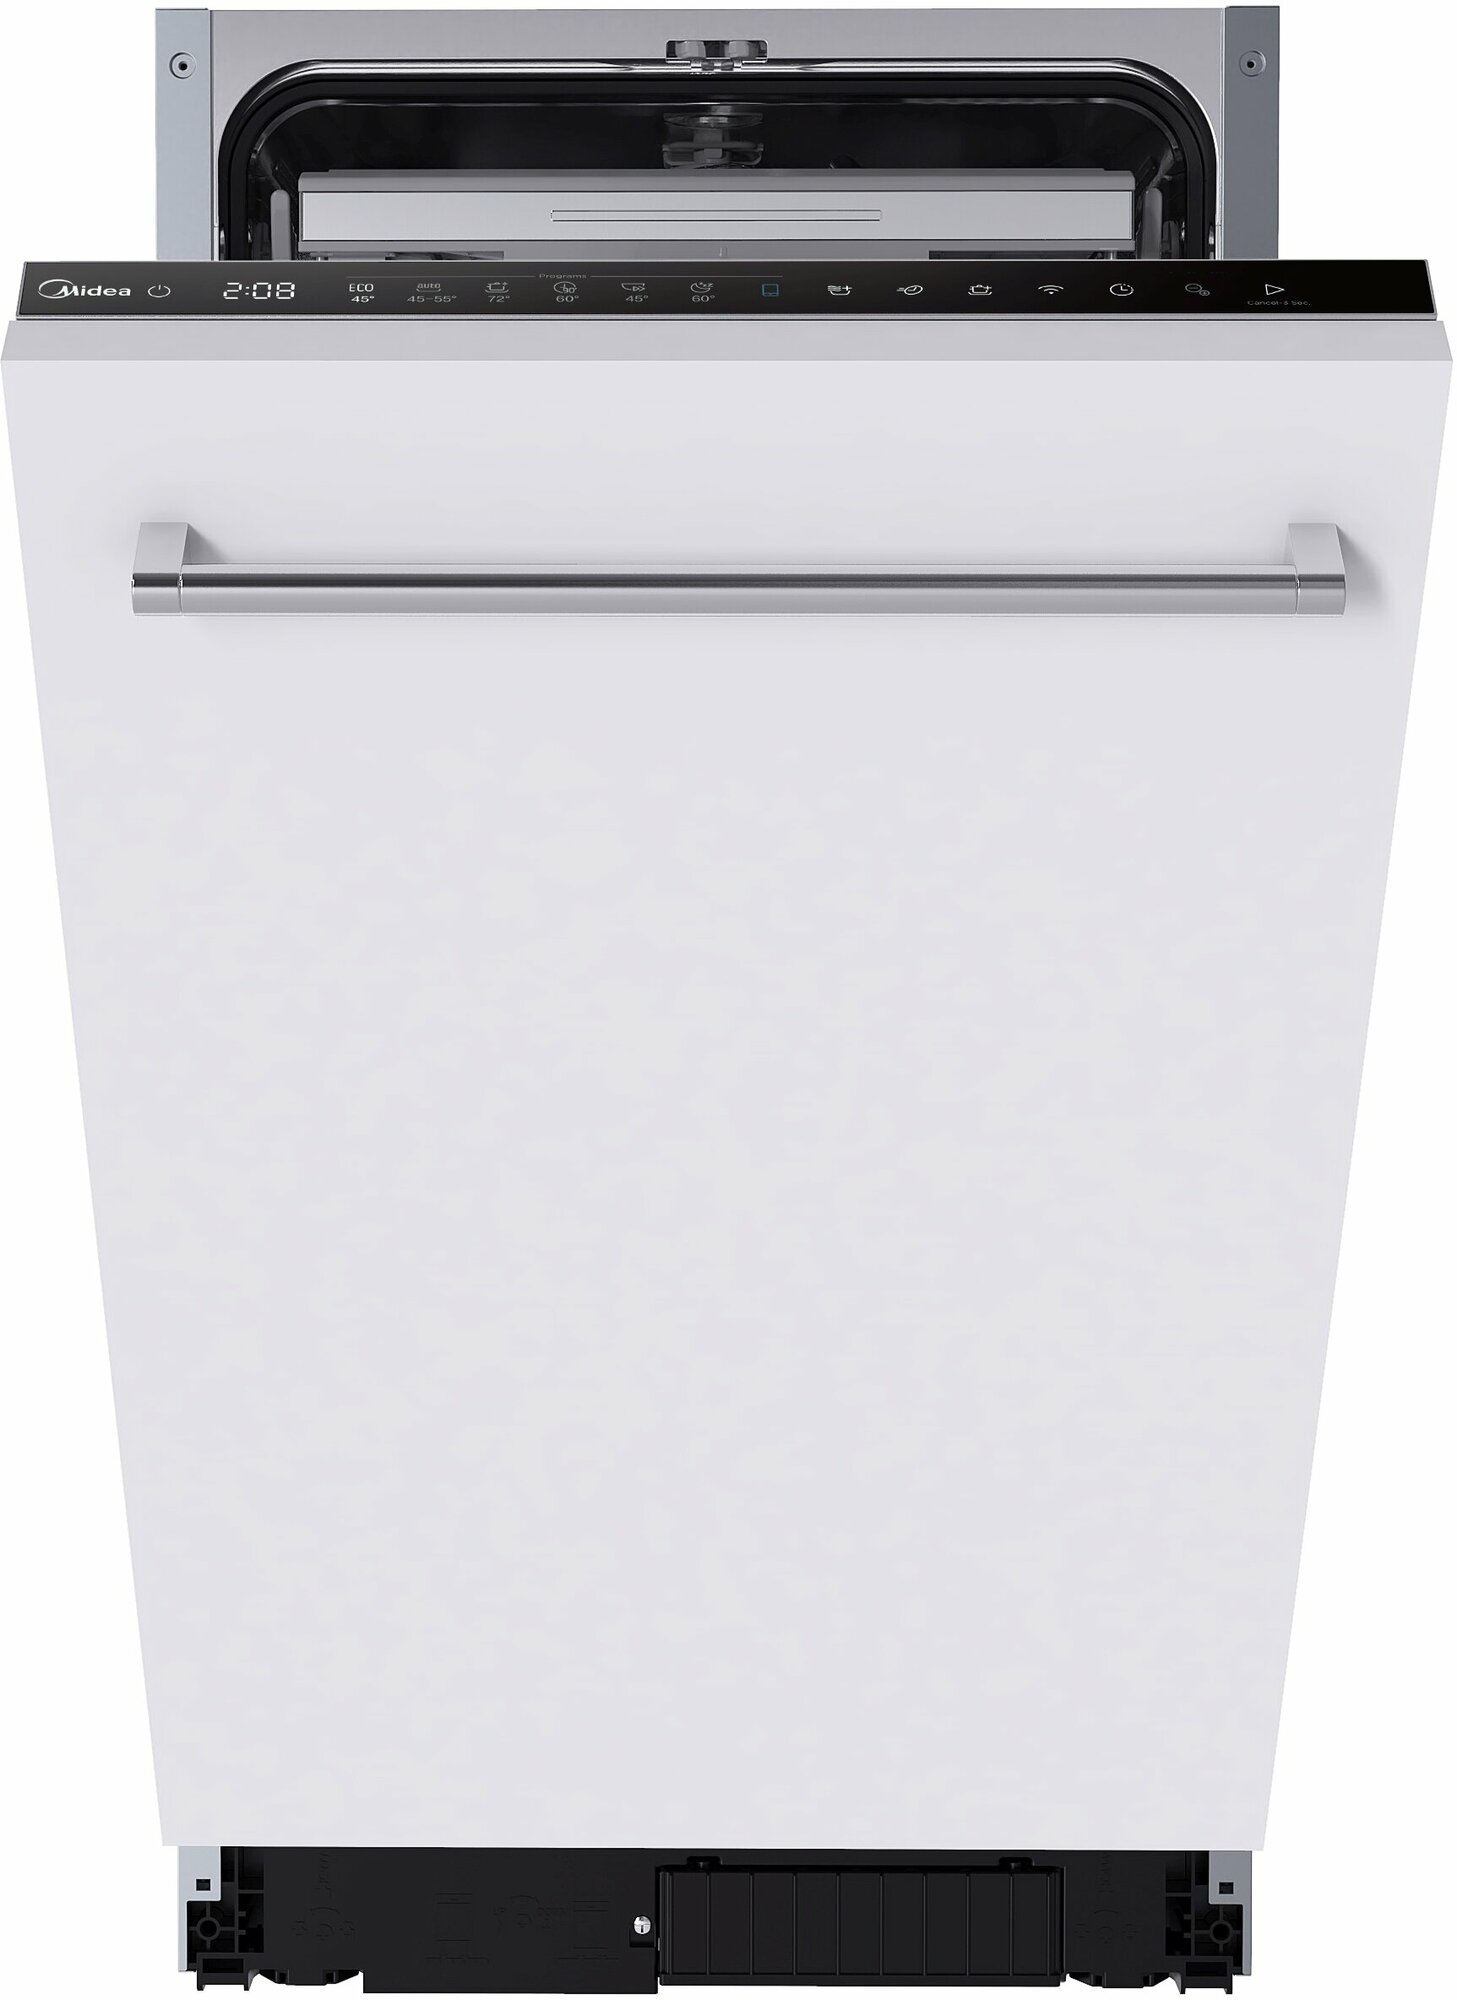 Встраиваемая посудомоечная машина Midea MID45S560i, серебристый